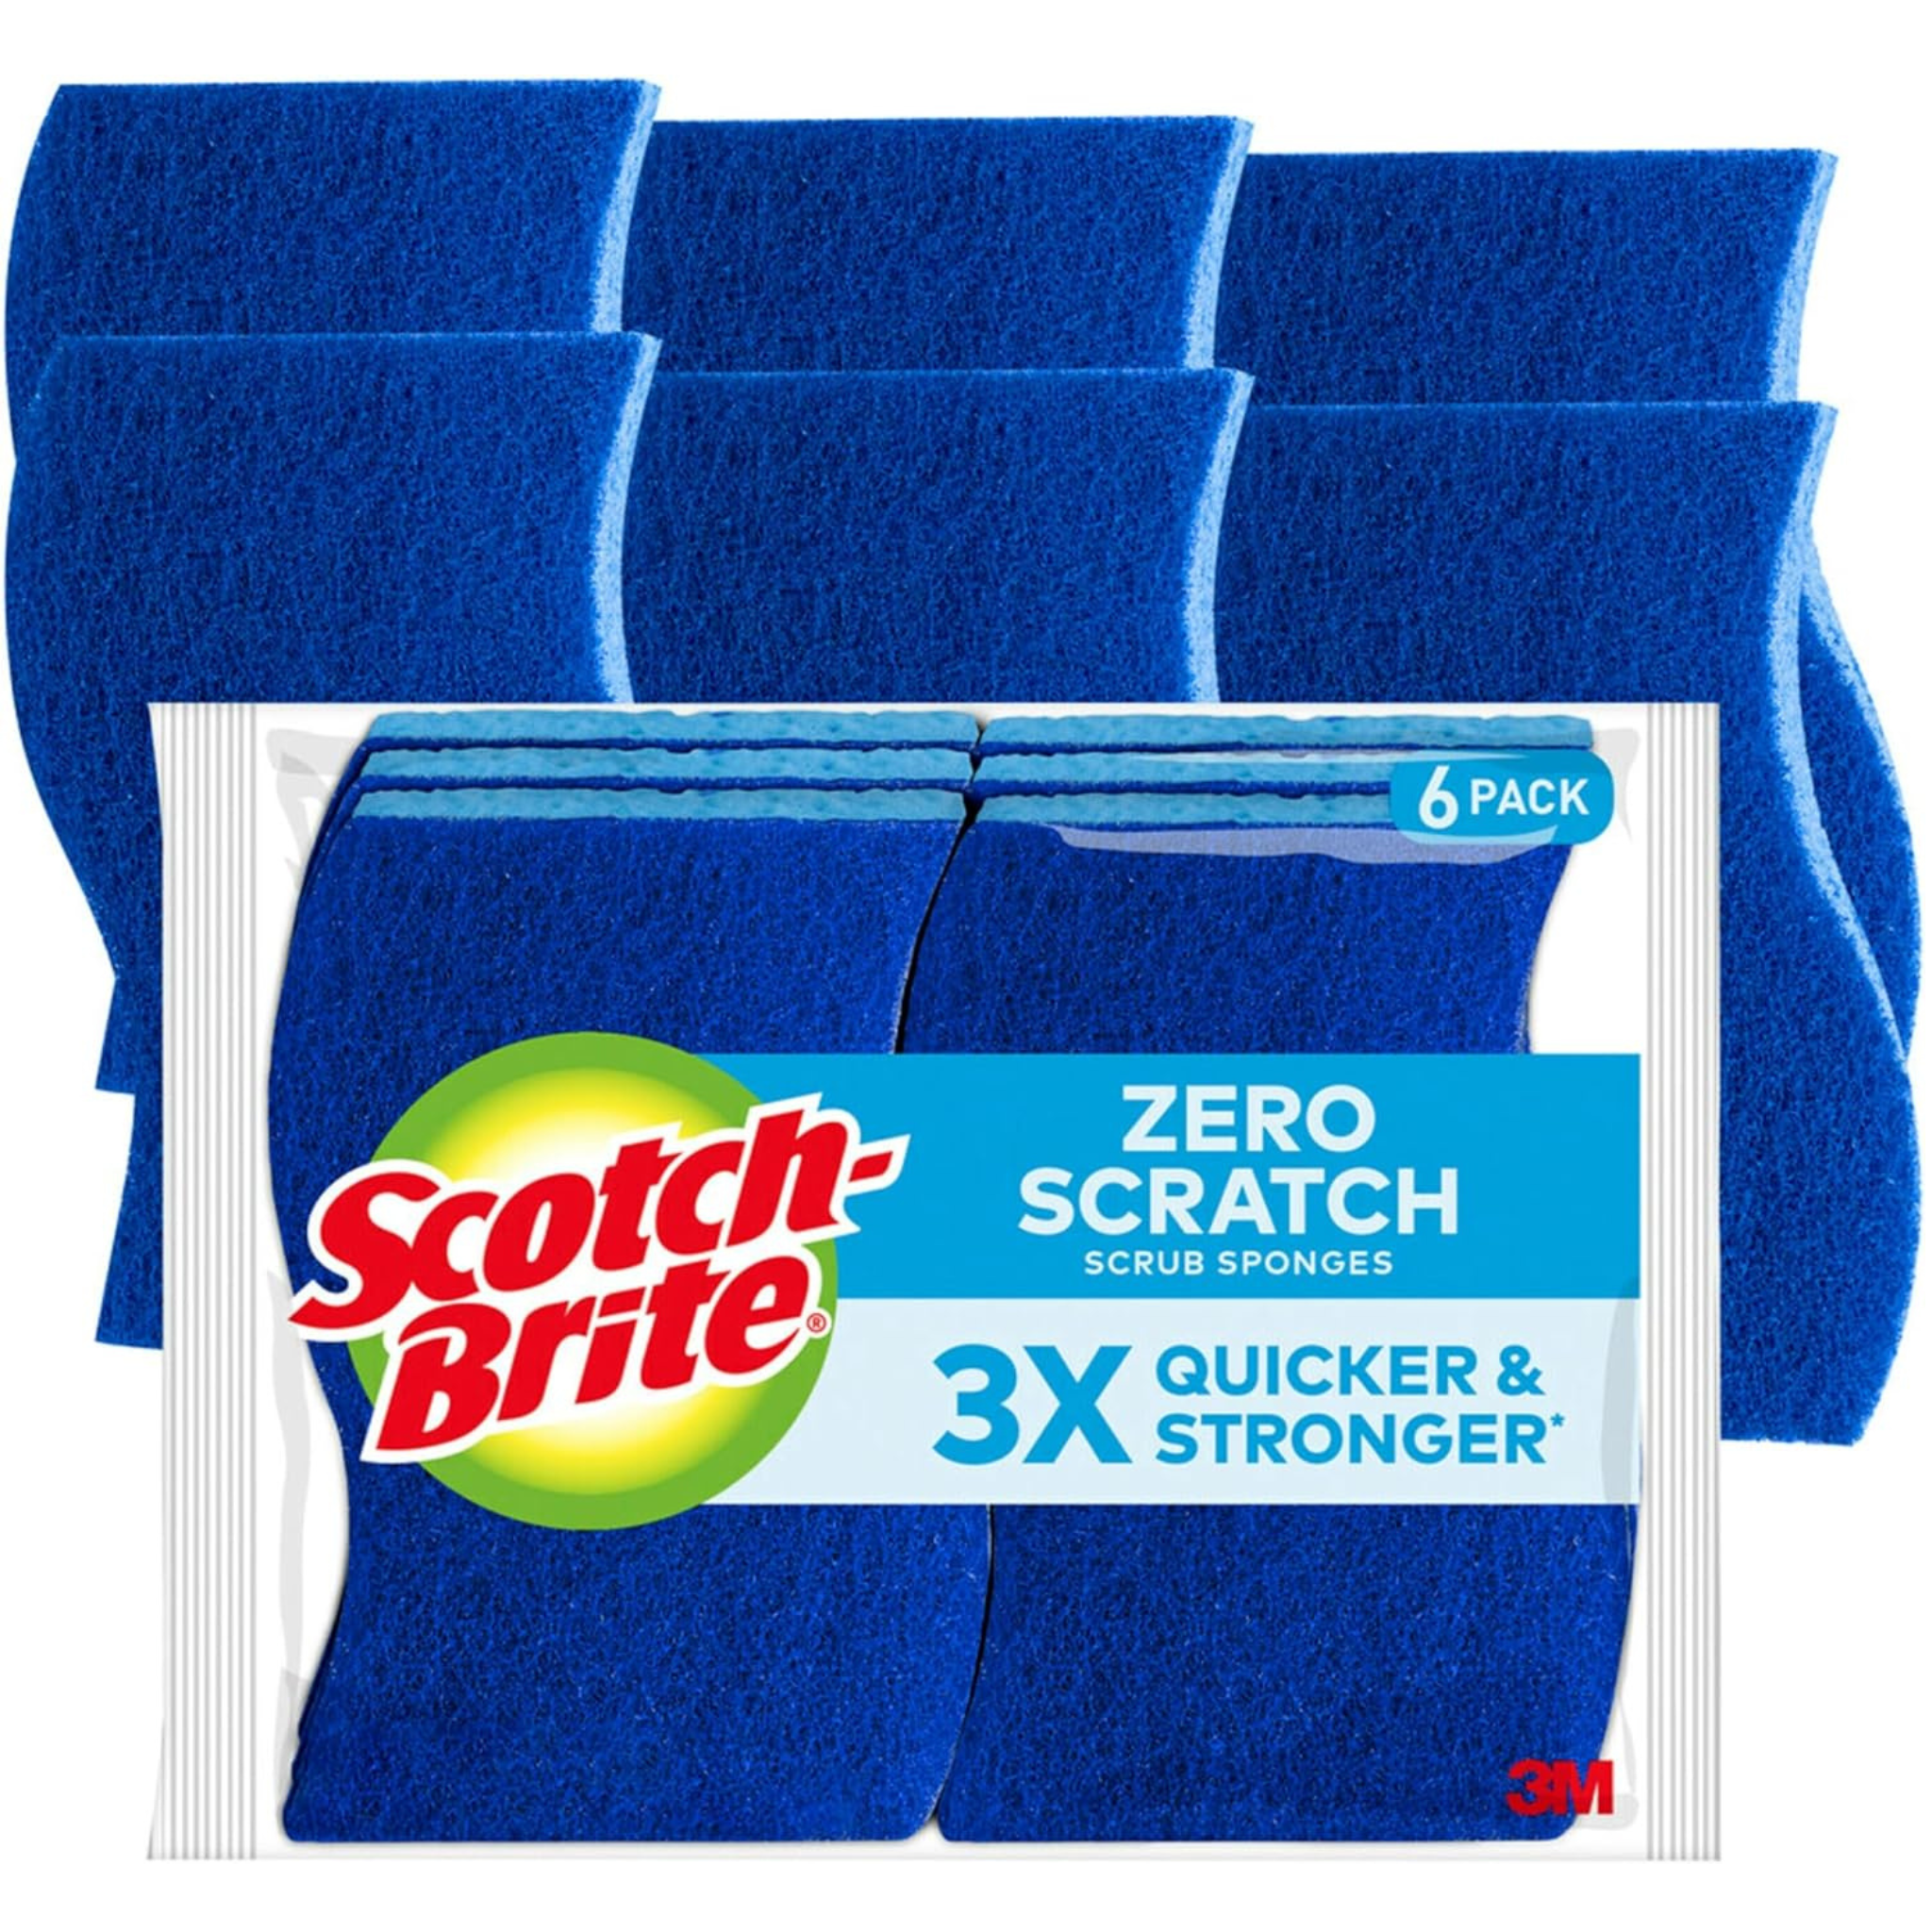 6-Count Scotch-Brite Zero Scratch Scrub Sponges